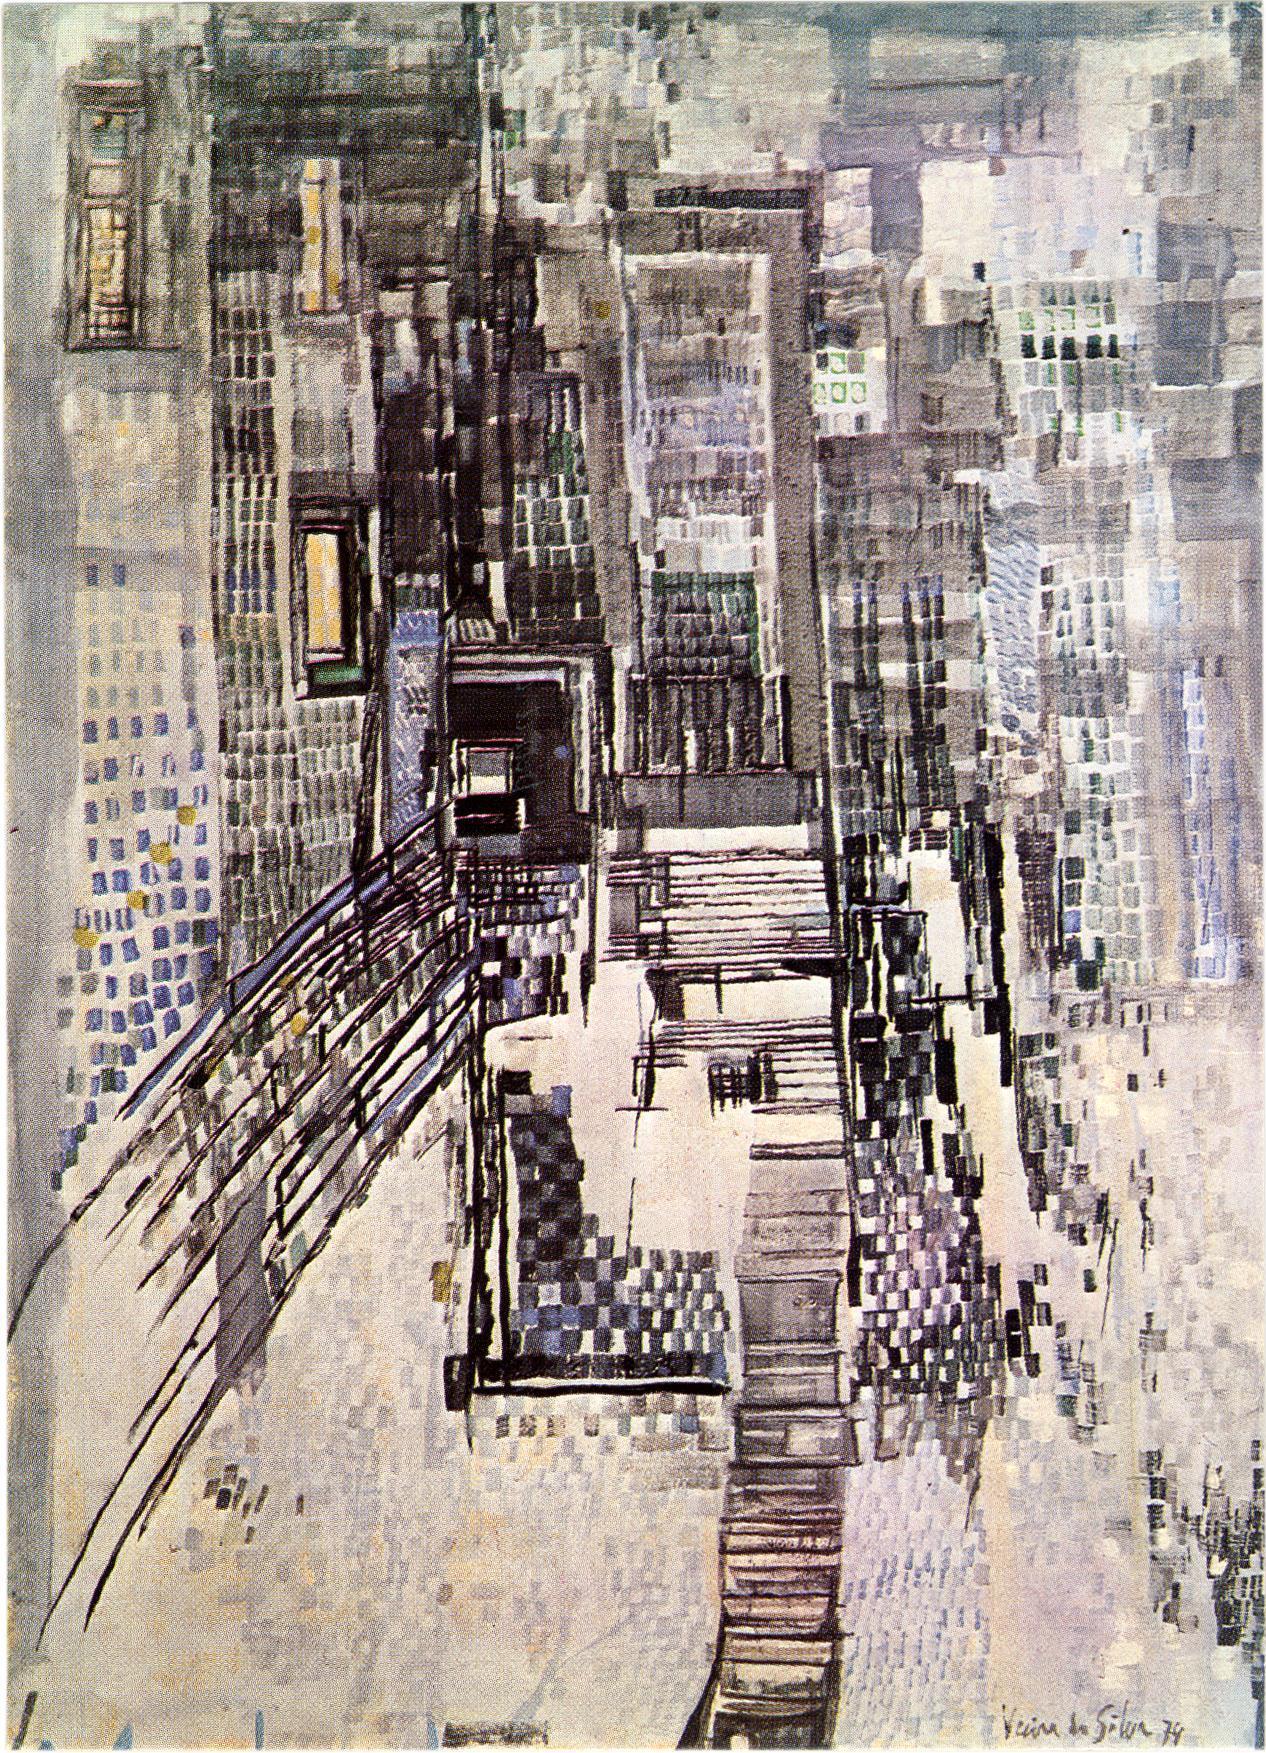 Vieira da Silva. Pinturas a Têmpera, 1929 – 1977